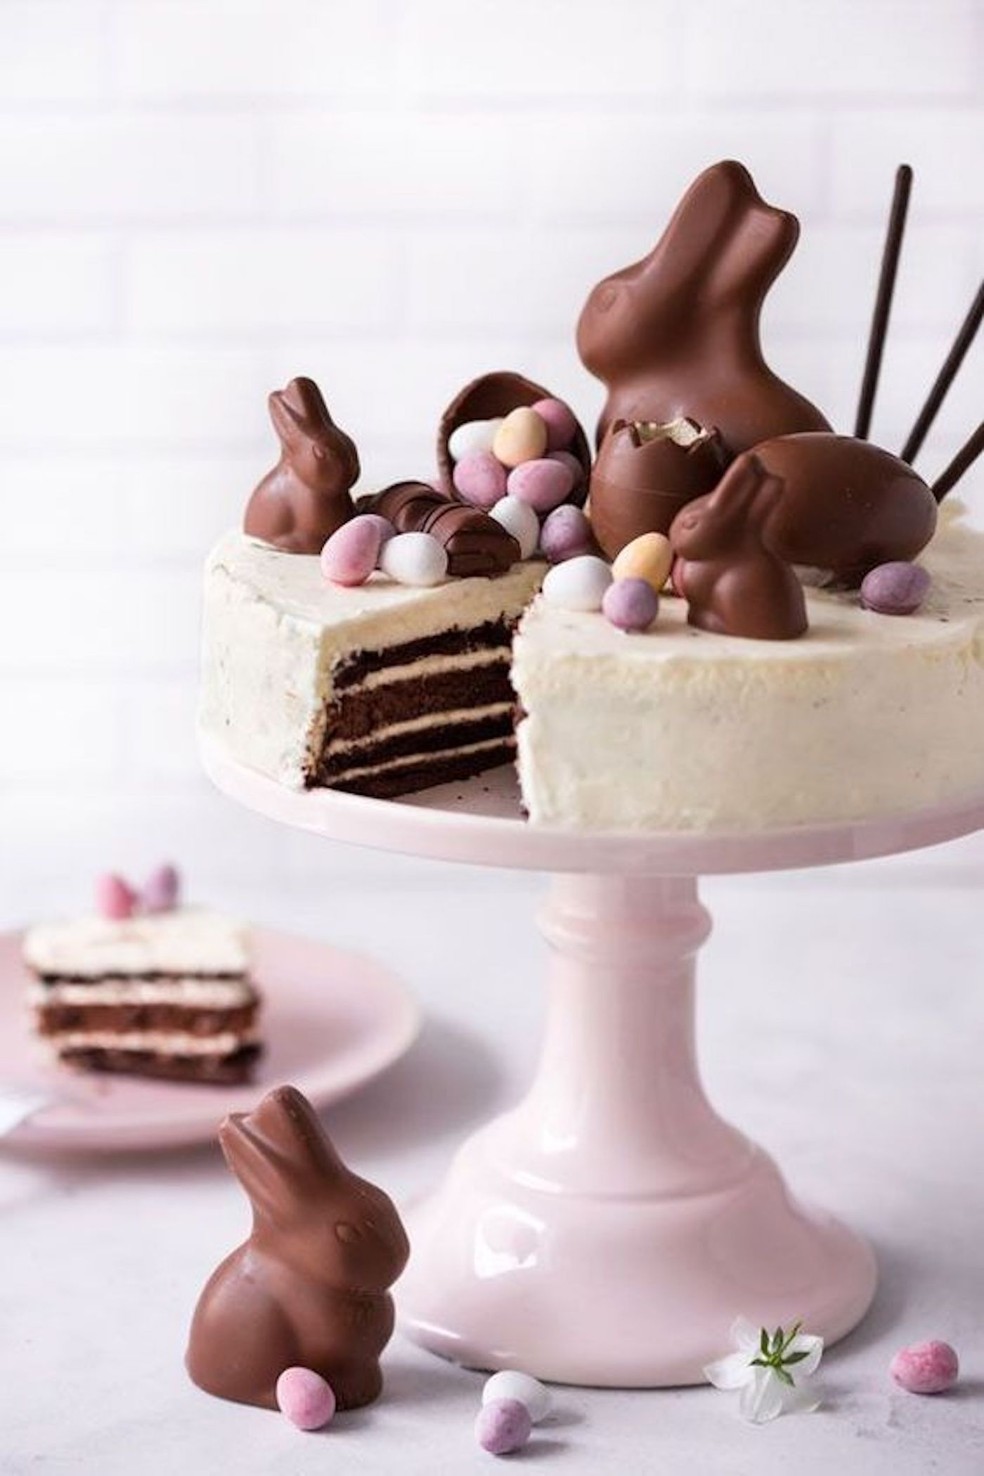 Coelhos de chocolate trazem o tema para um bolo ou uma torta — Foto: Pinterest / Momooze / Reprodução